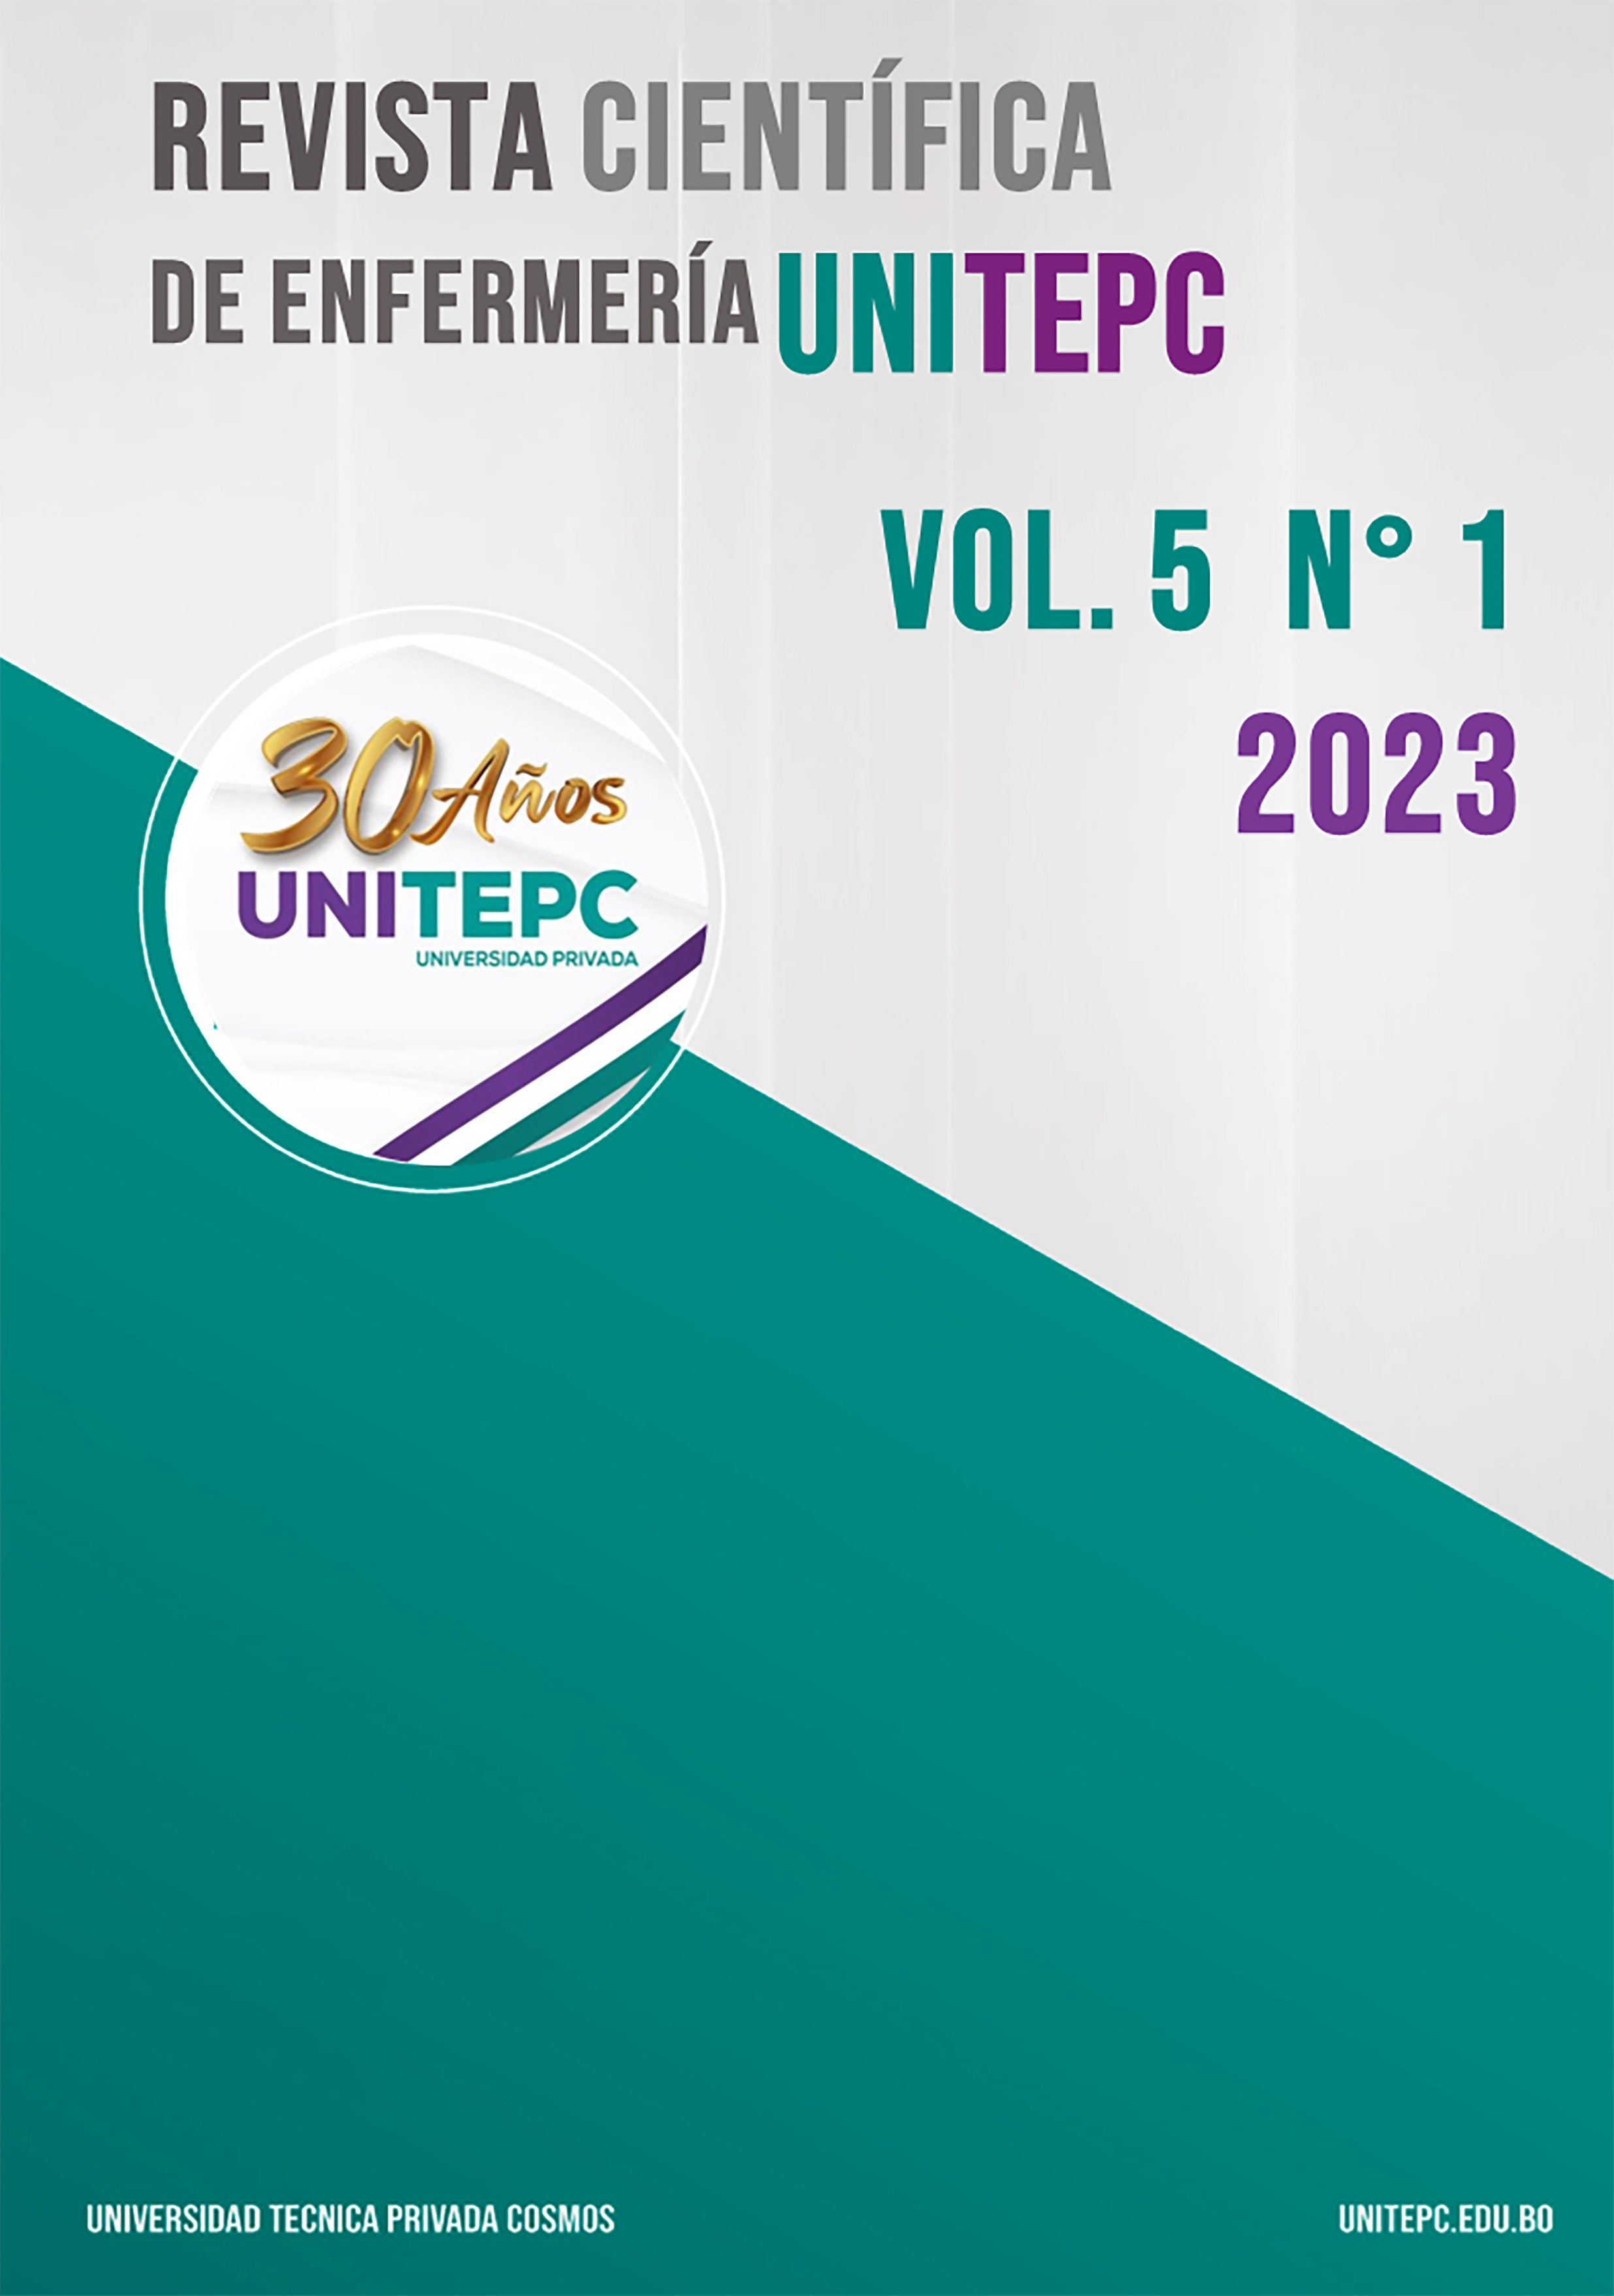 					View Vol. 5 No. 1 (2023):  Revista Científica de Enfermería UNITEPC
				